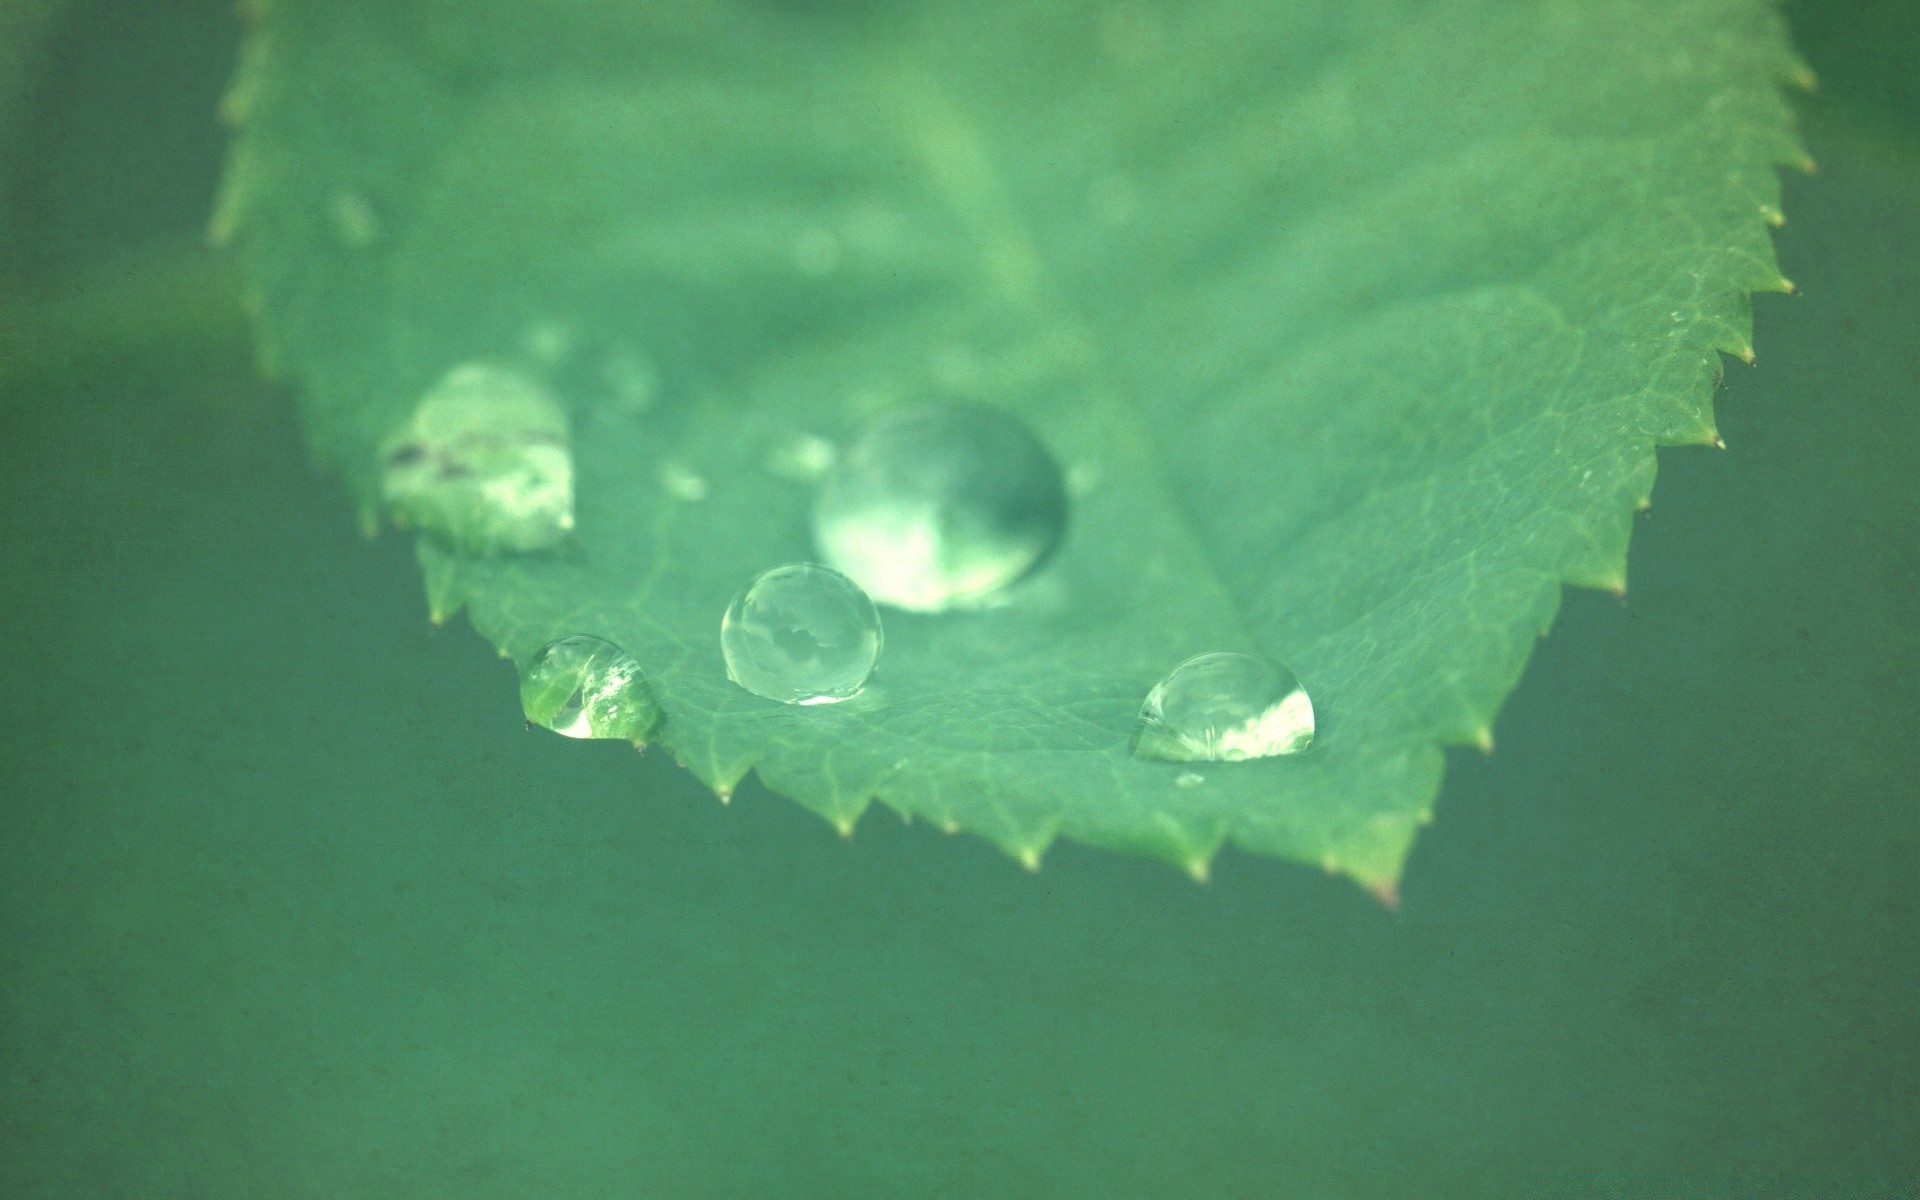 винтаж дождь лист падение воды капли природа пузырь мокрый росы